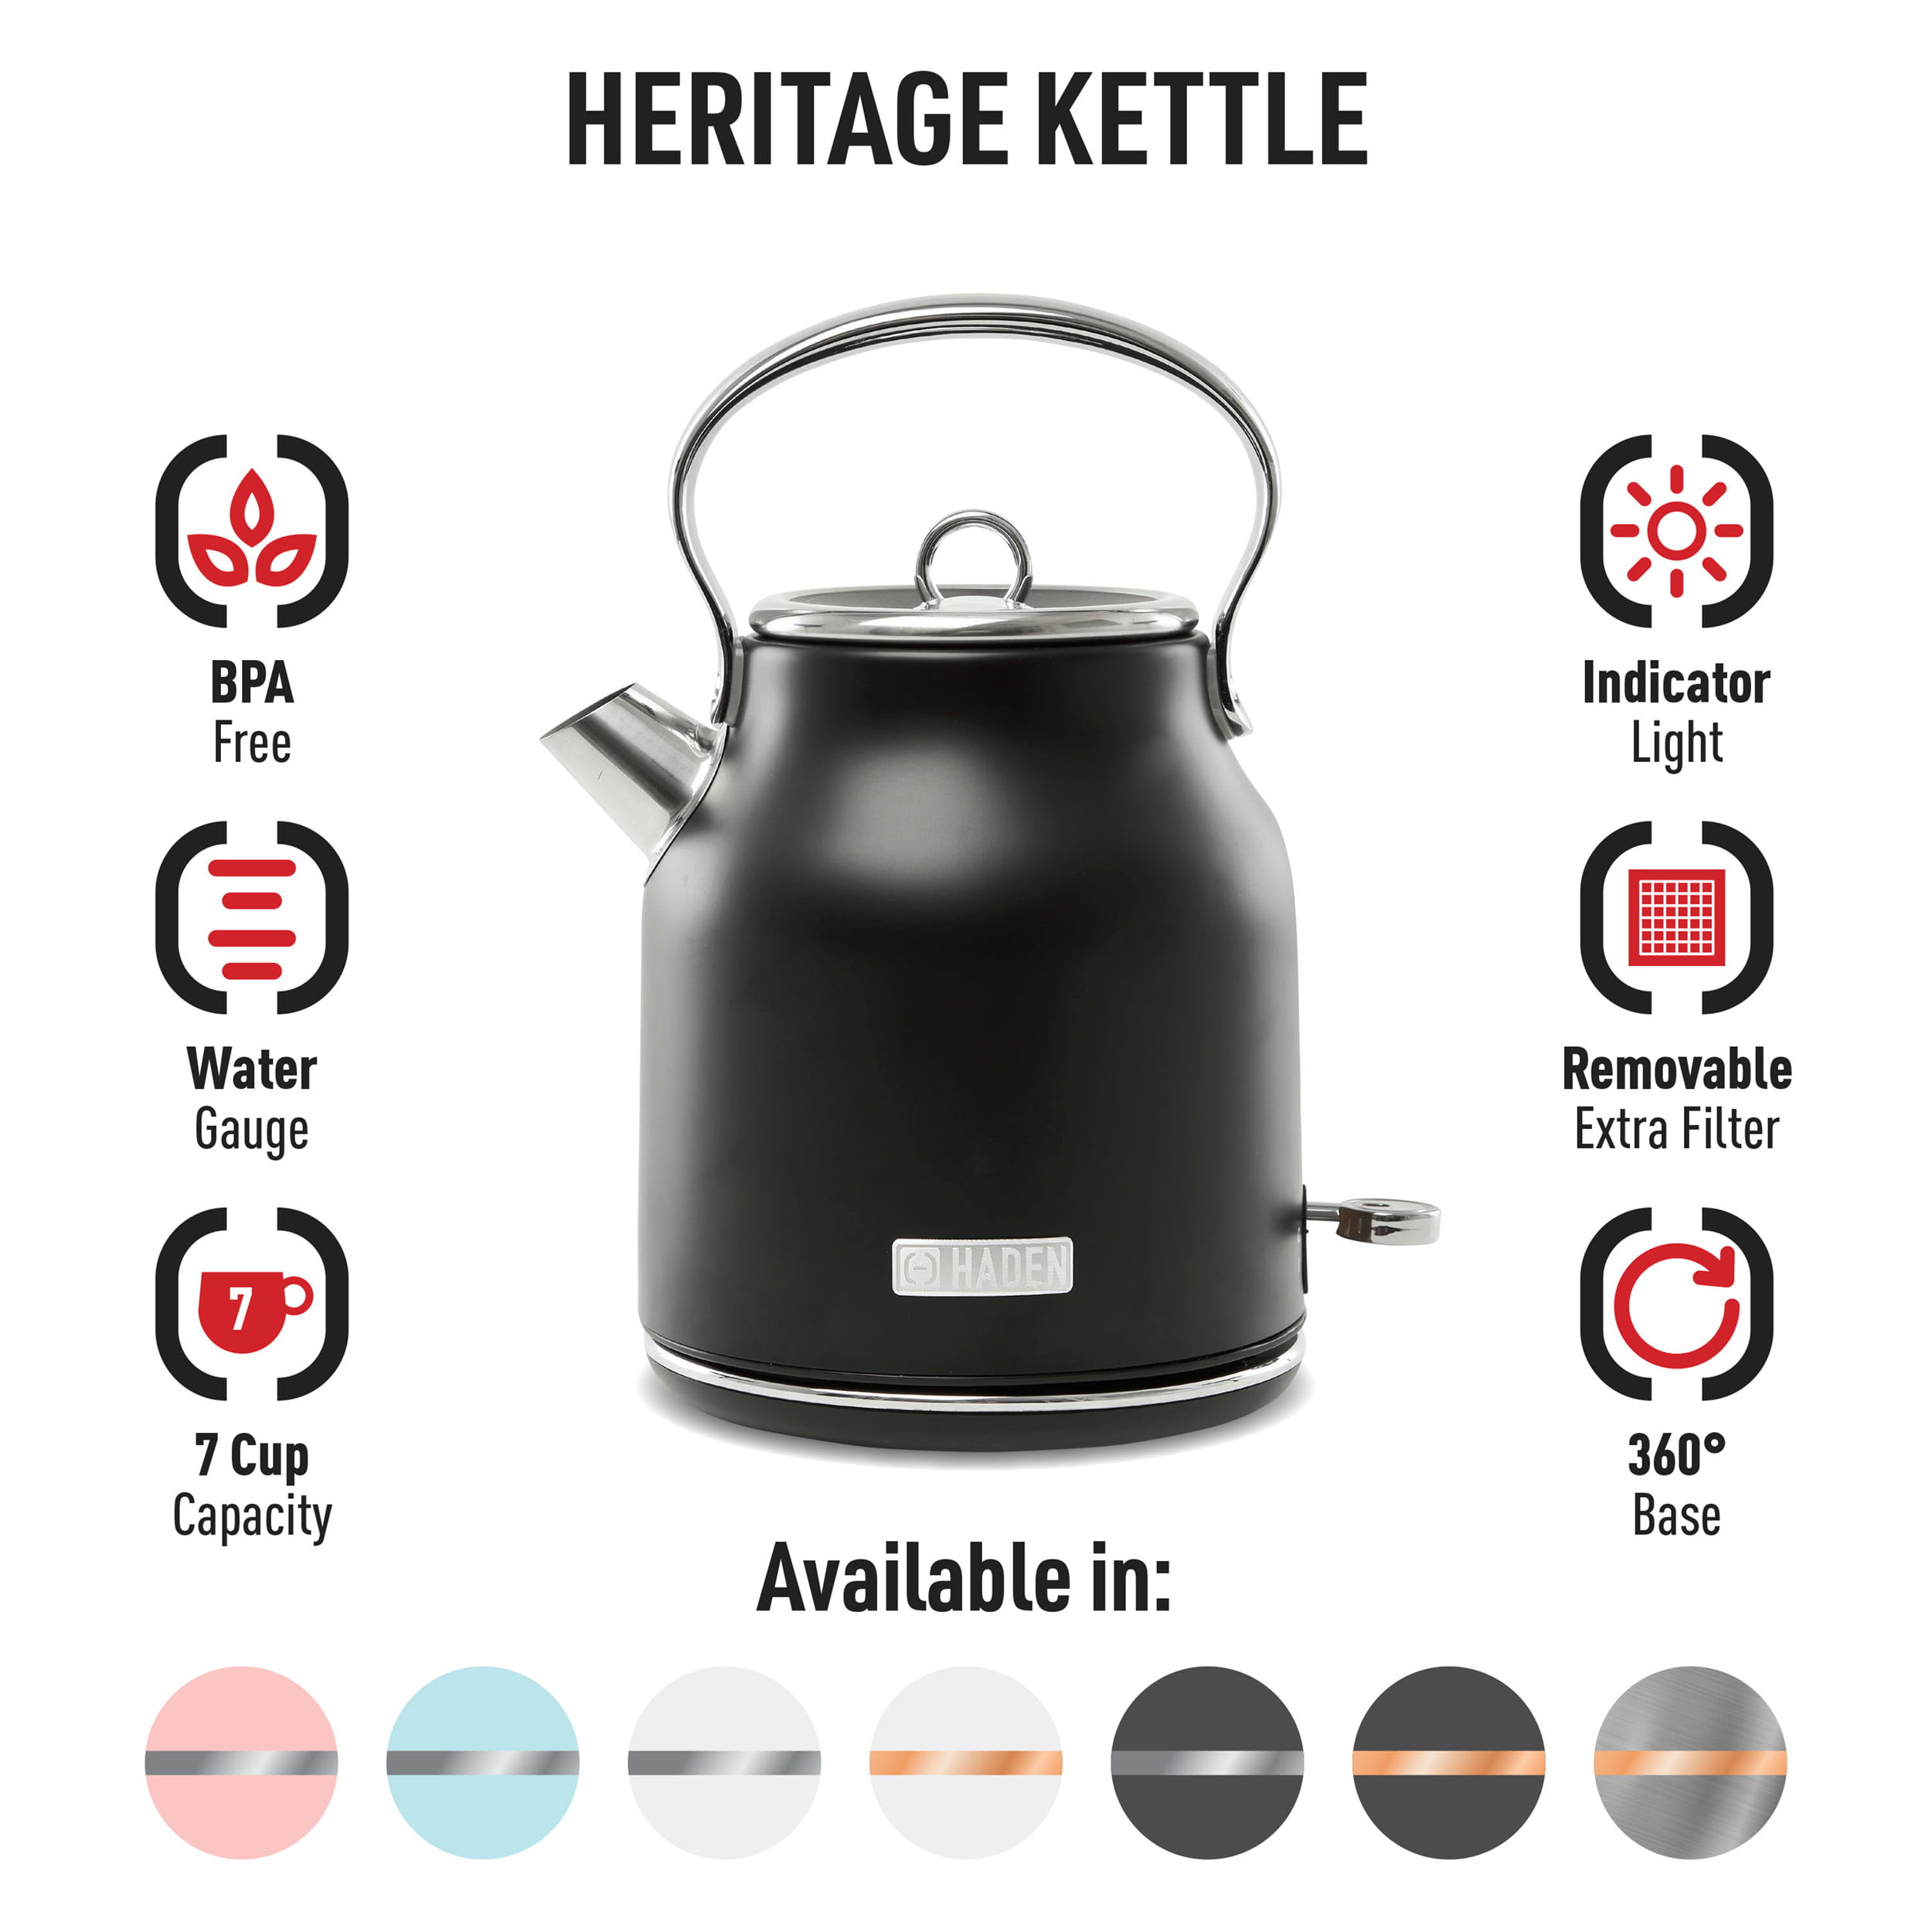 Haden Heritage 1.7 Liter Electric Kettle Black - ShopStyle